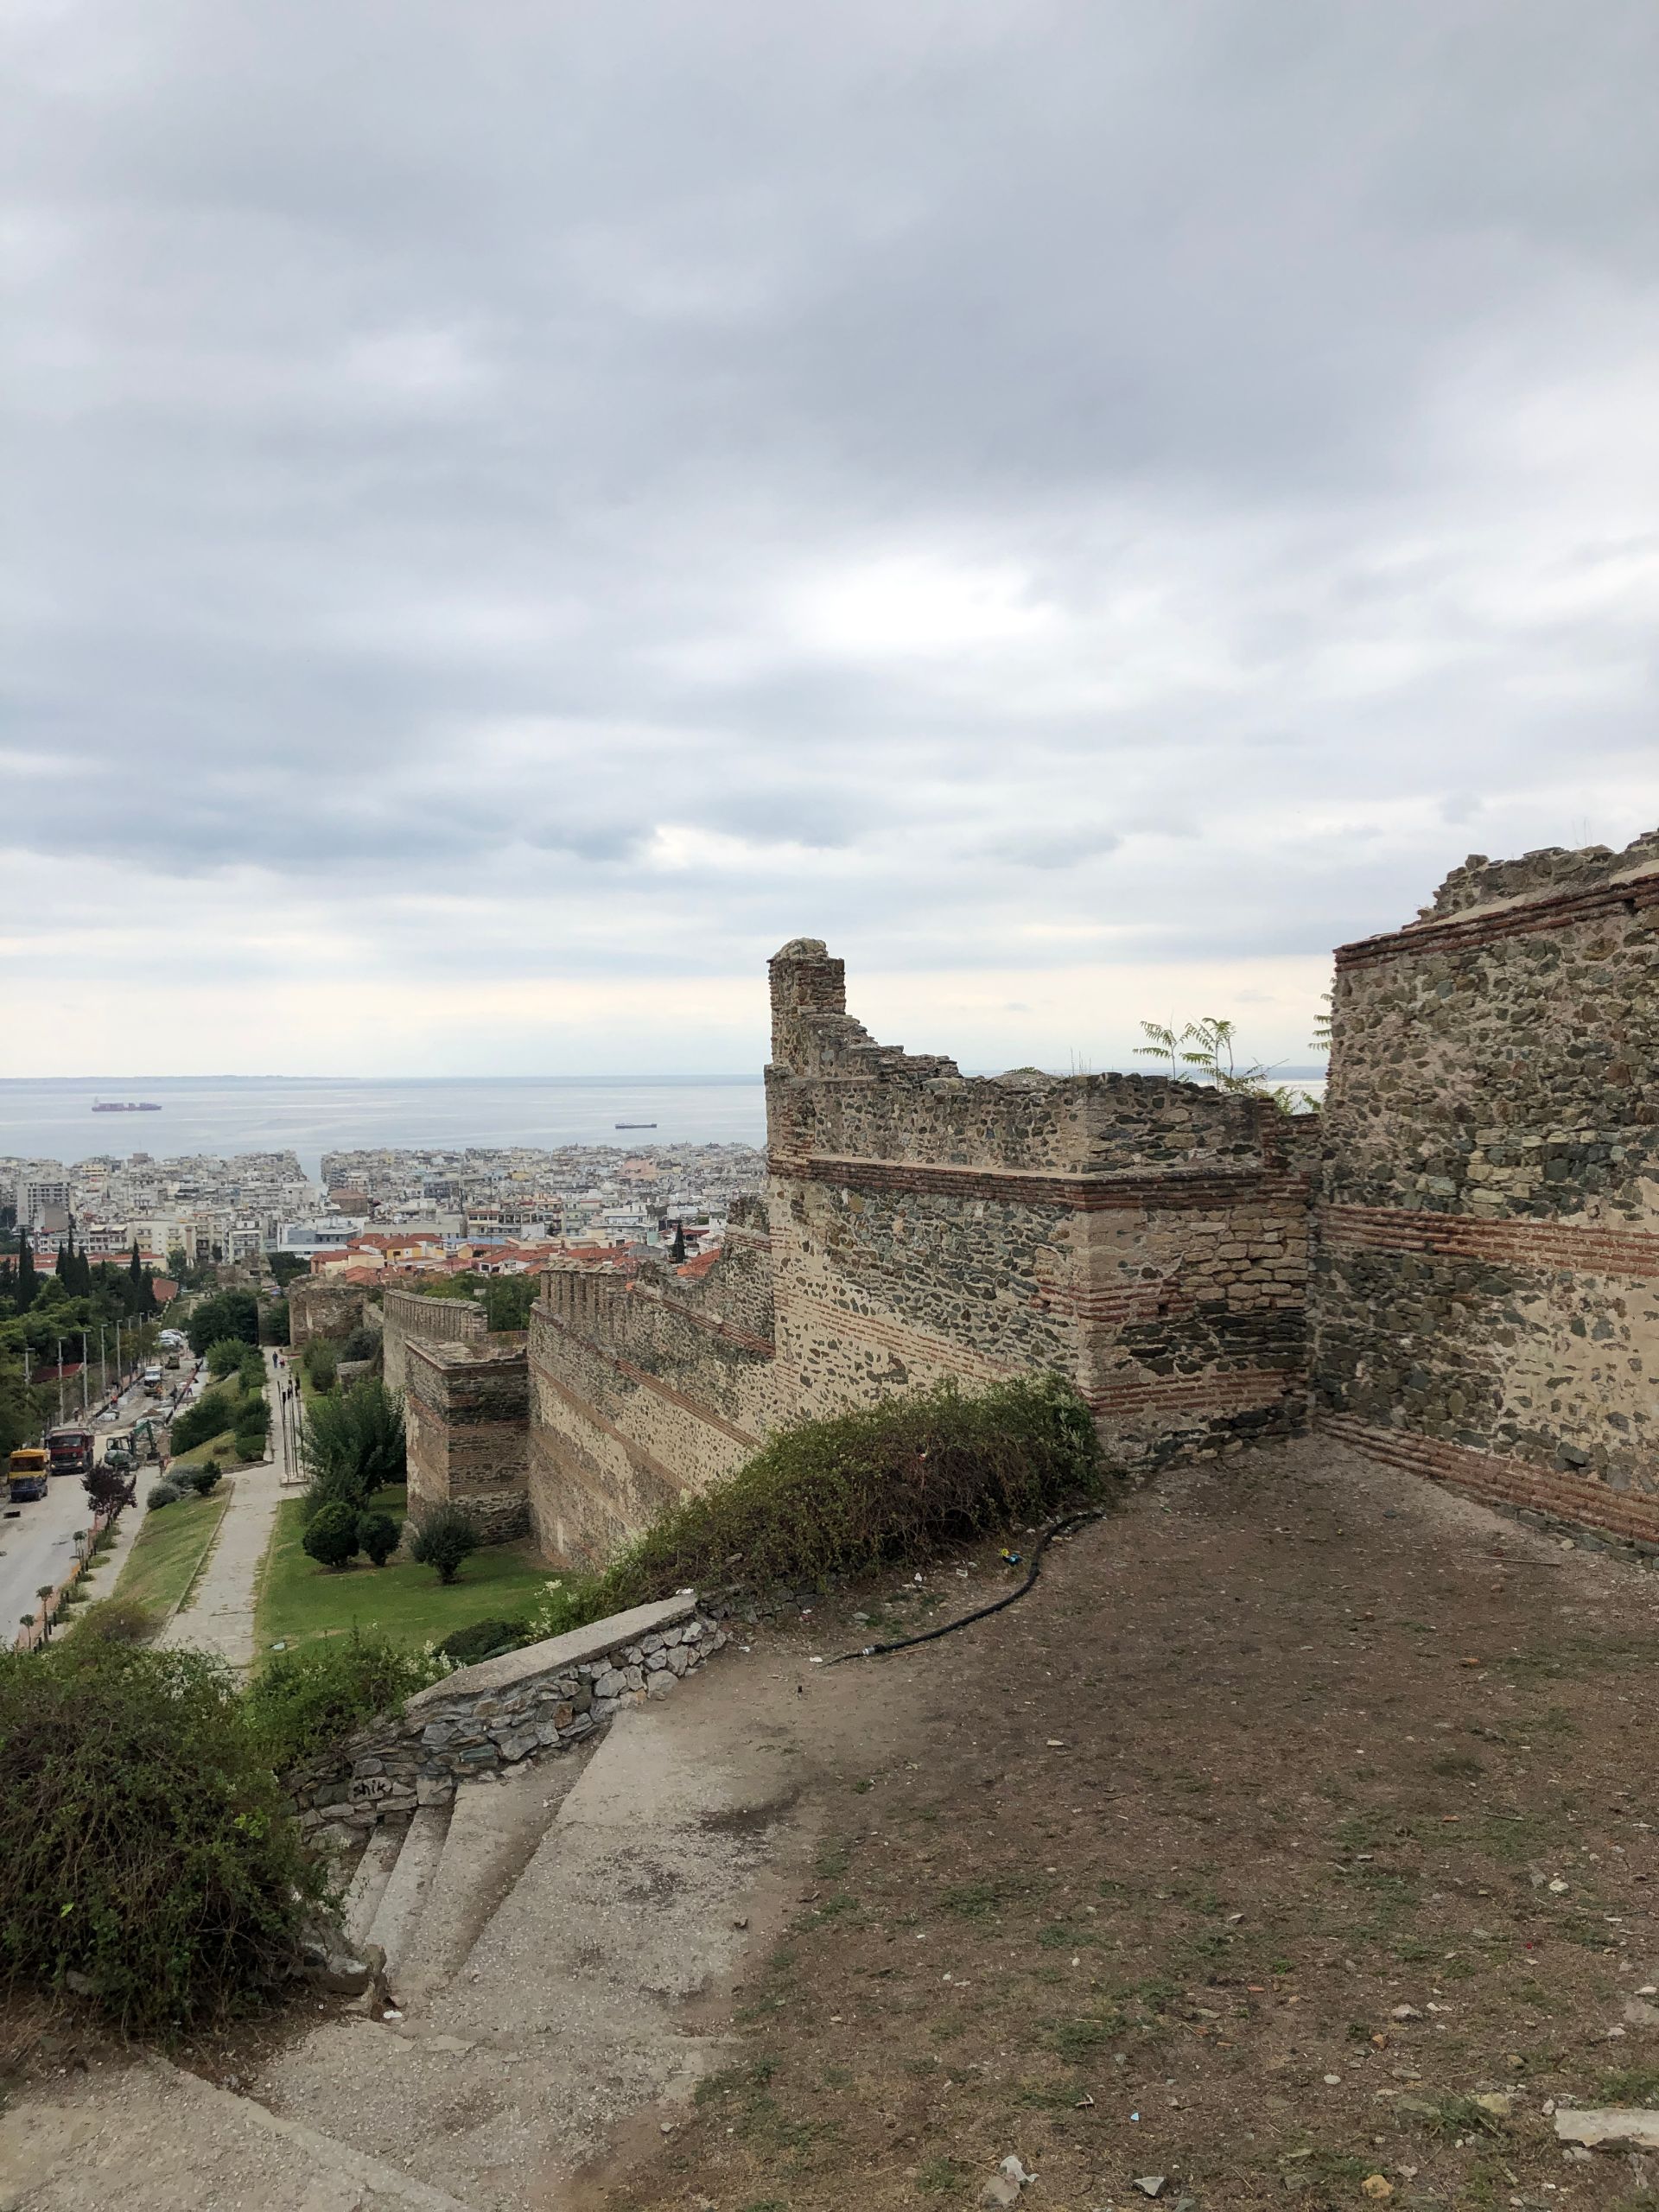 Blick aufs Meer von einem Hügel aus, Stadtmauer mit Turmruine, menschenleer